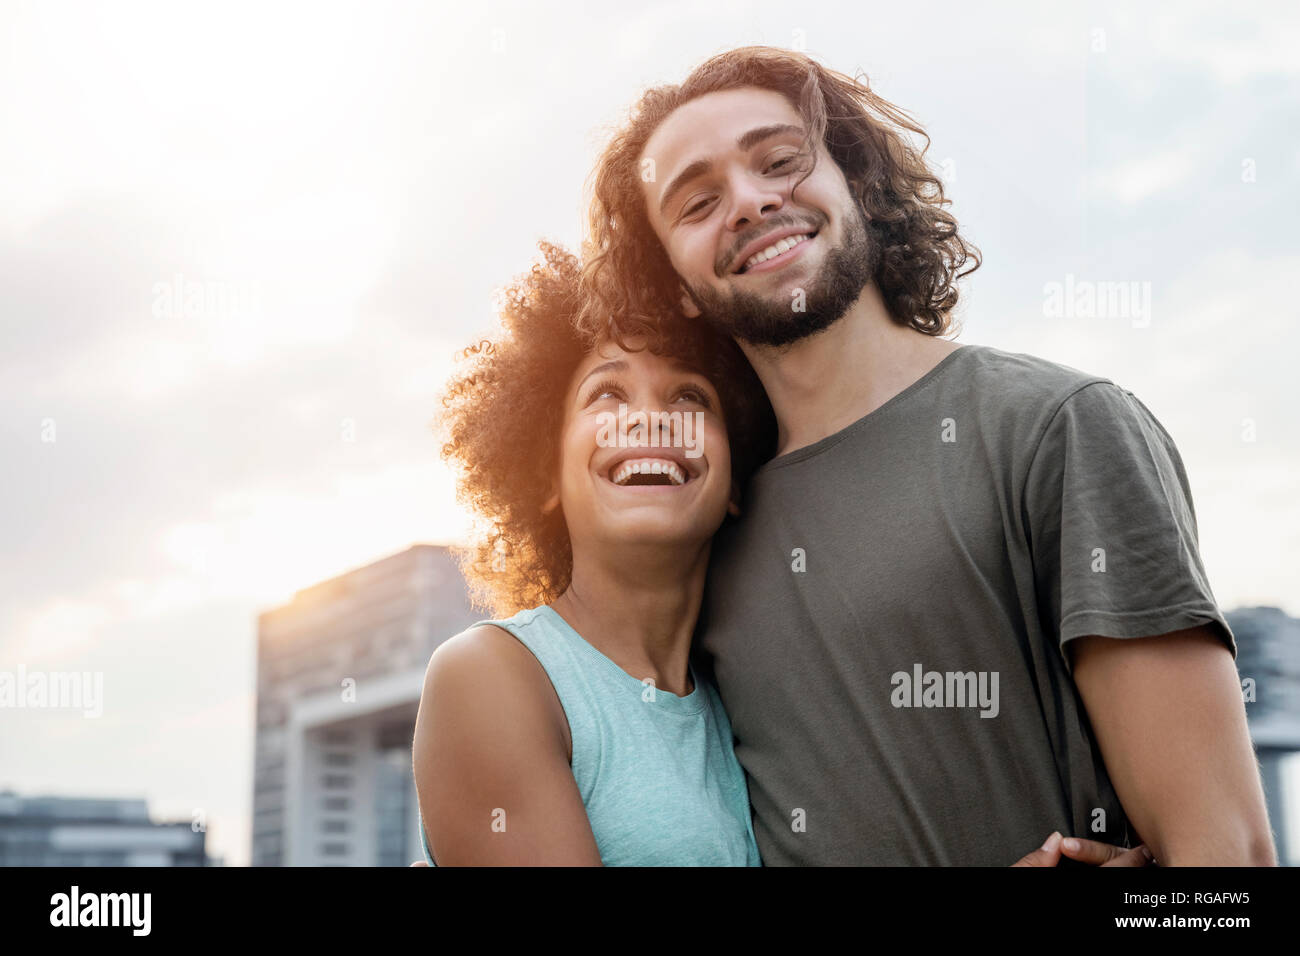 Germania, Colonia, ritratto di coppia felice al Riverside Foto Stock